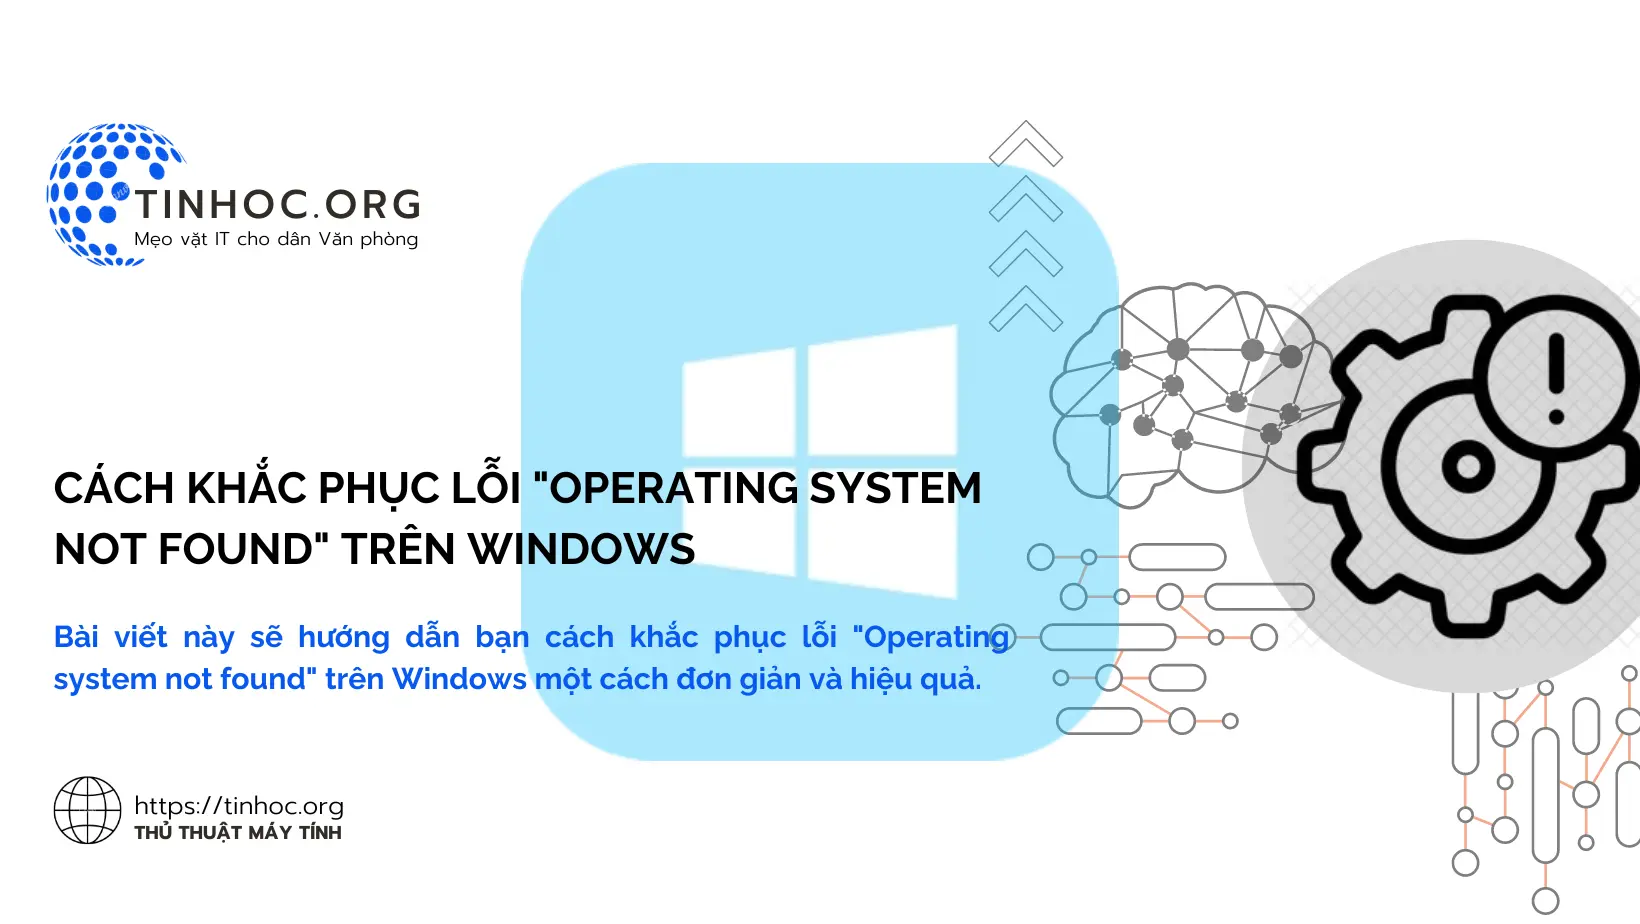 Bài viết này sẽ hướng dẫn bạn cách khắc phục lỗi "Operating system not found" trên Windows một cách đơn giản và hiệu quả.